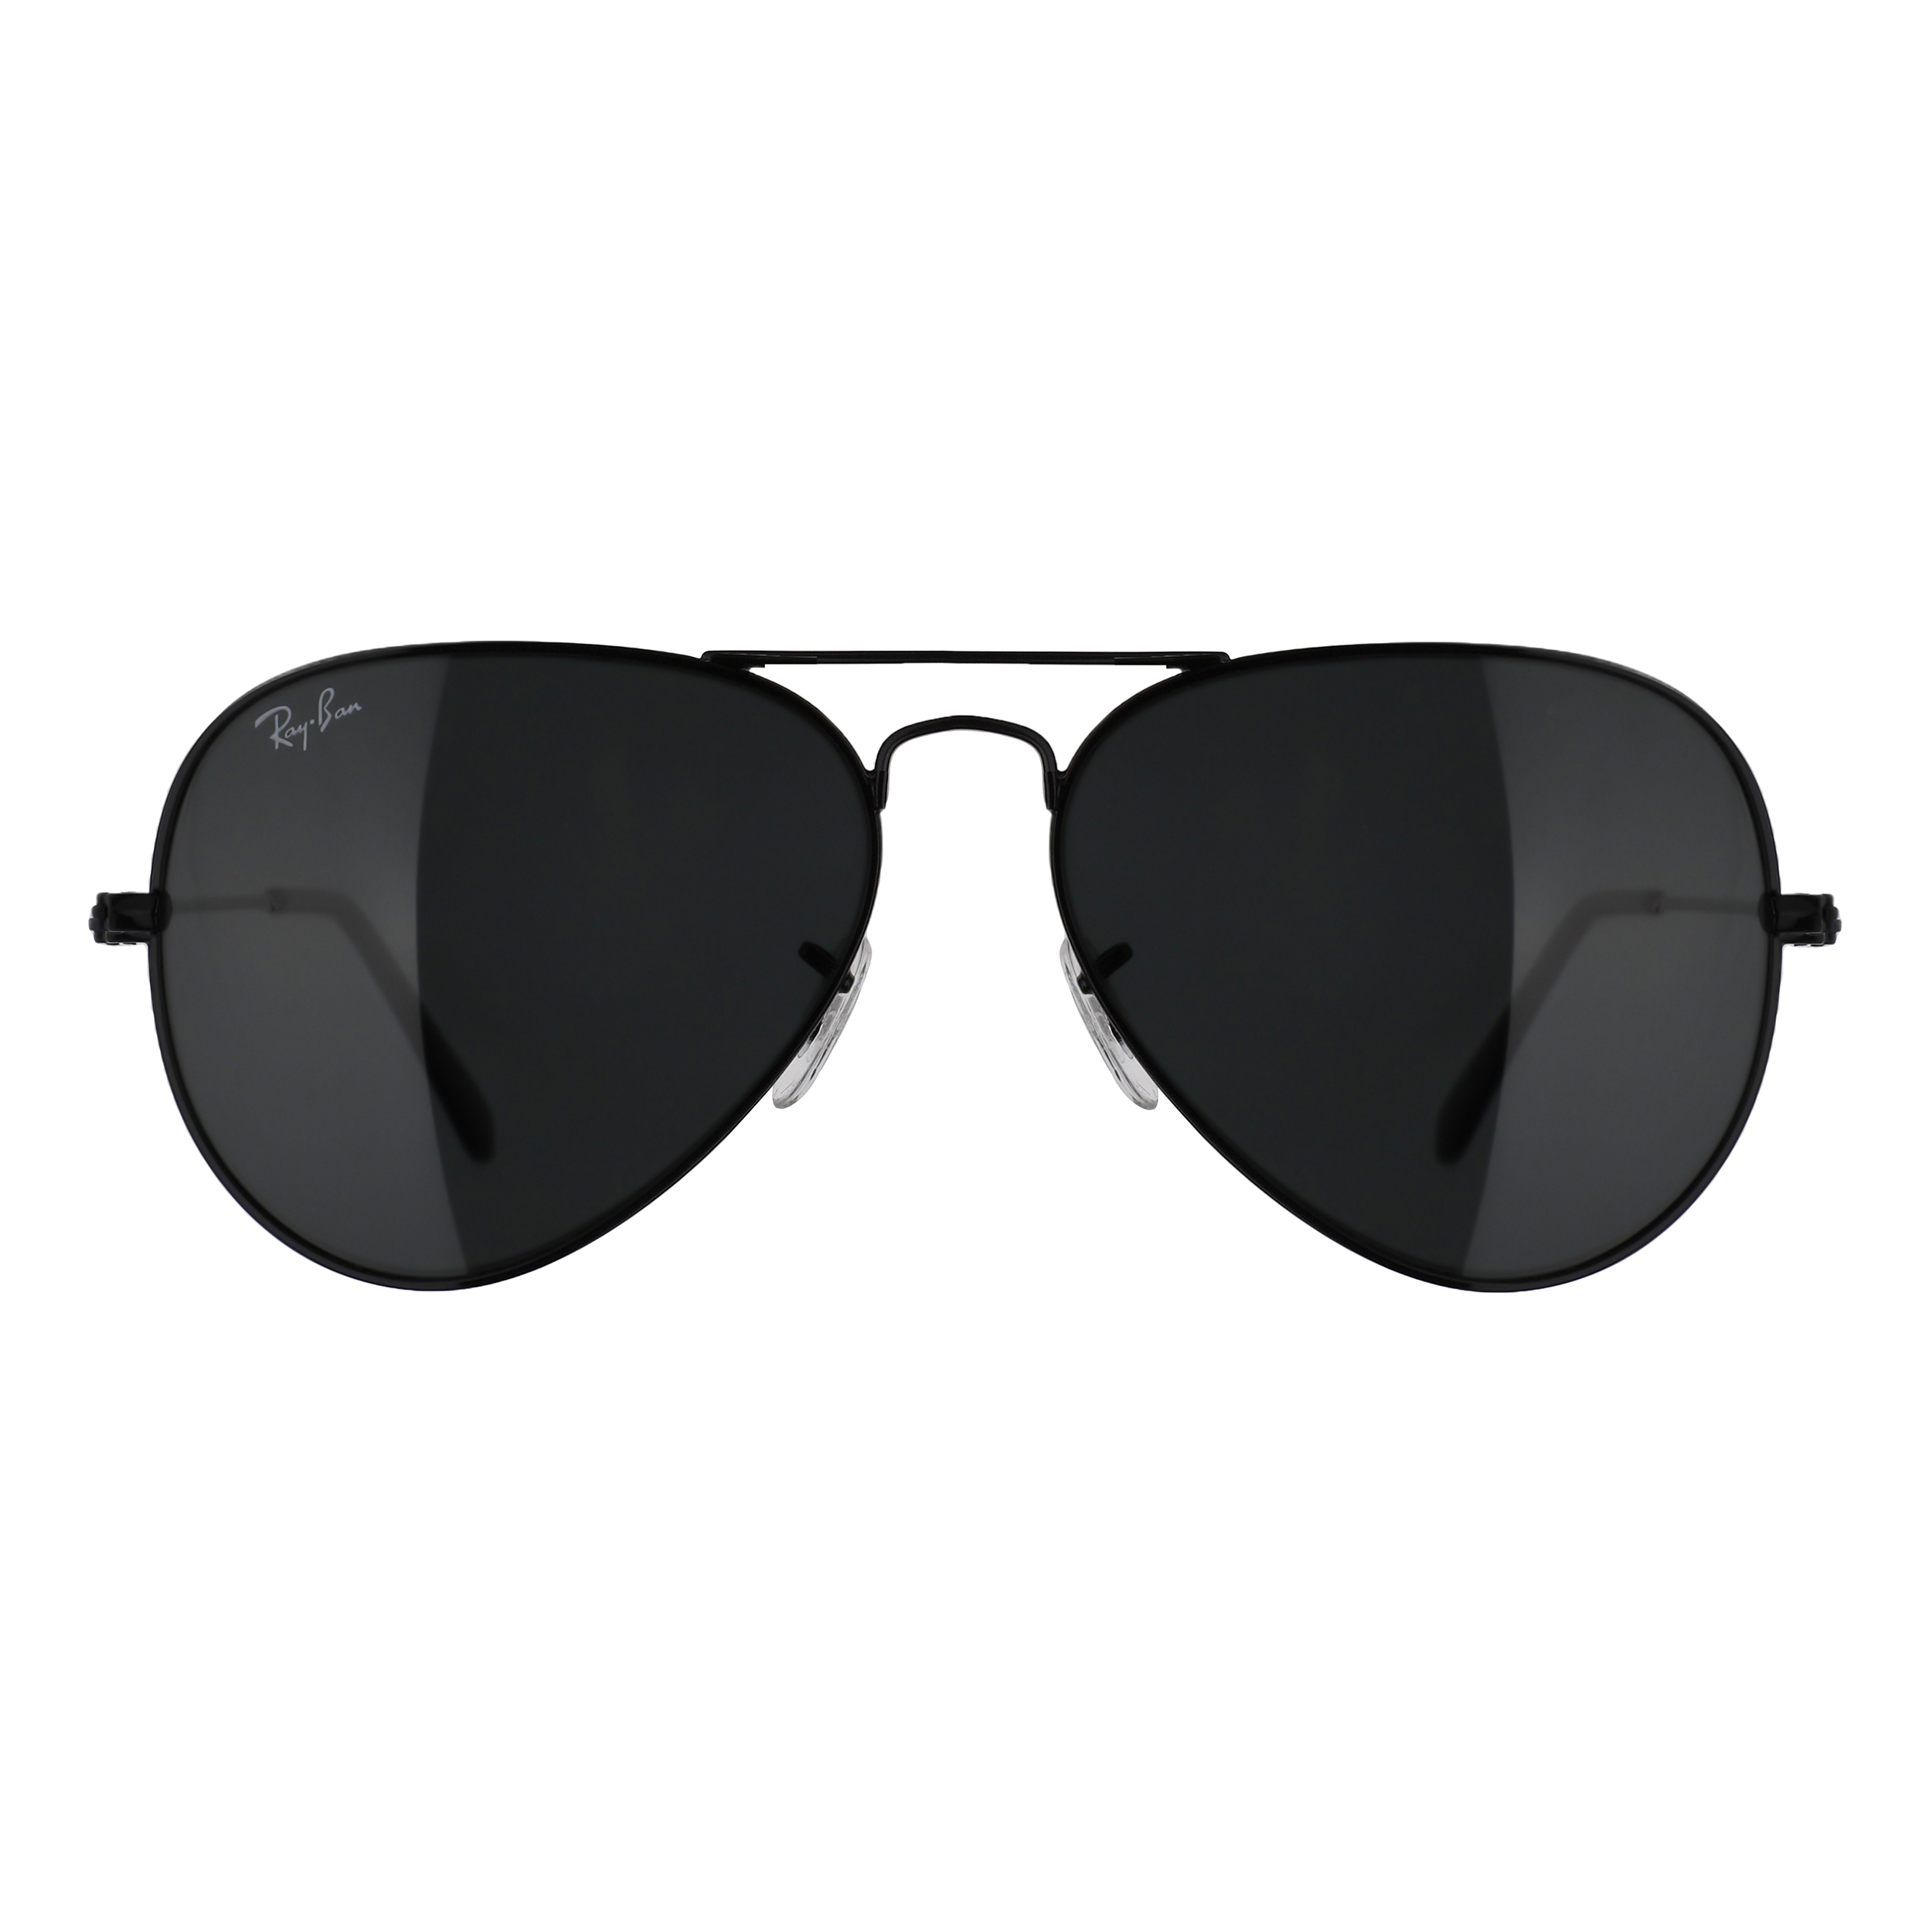 عینک آفتابی ری بن مدل RB3025-002/62 -  - 1